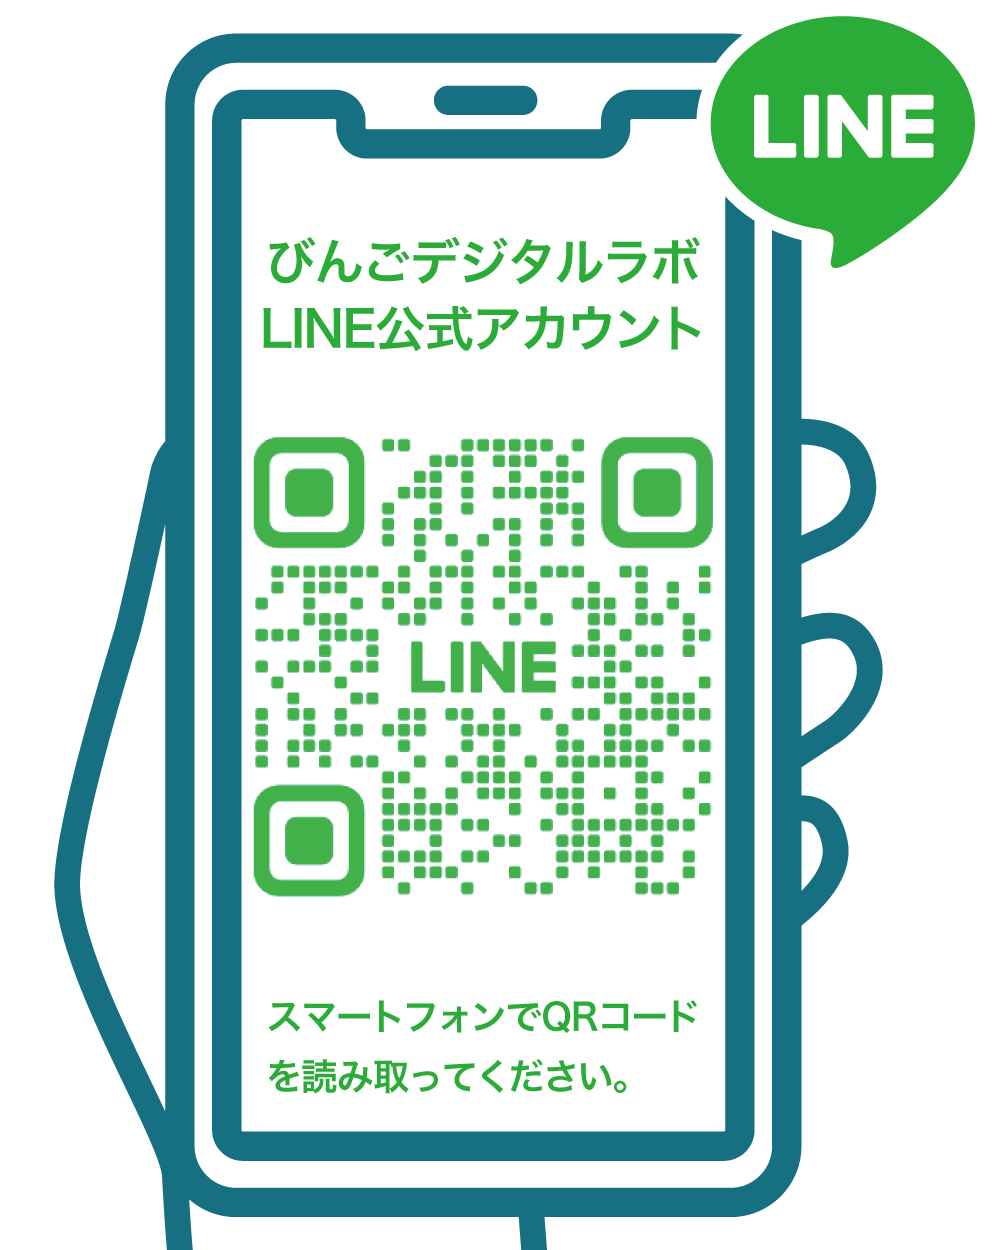 びんごデジタルラボ公式LINEアカウント